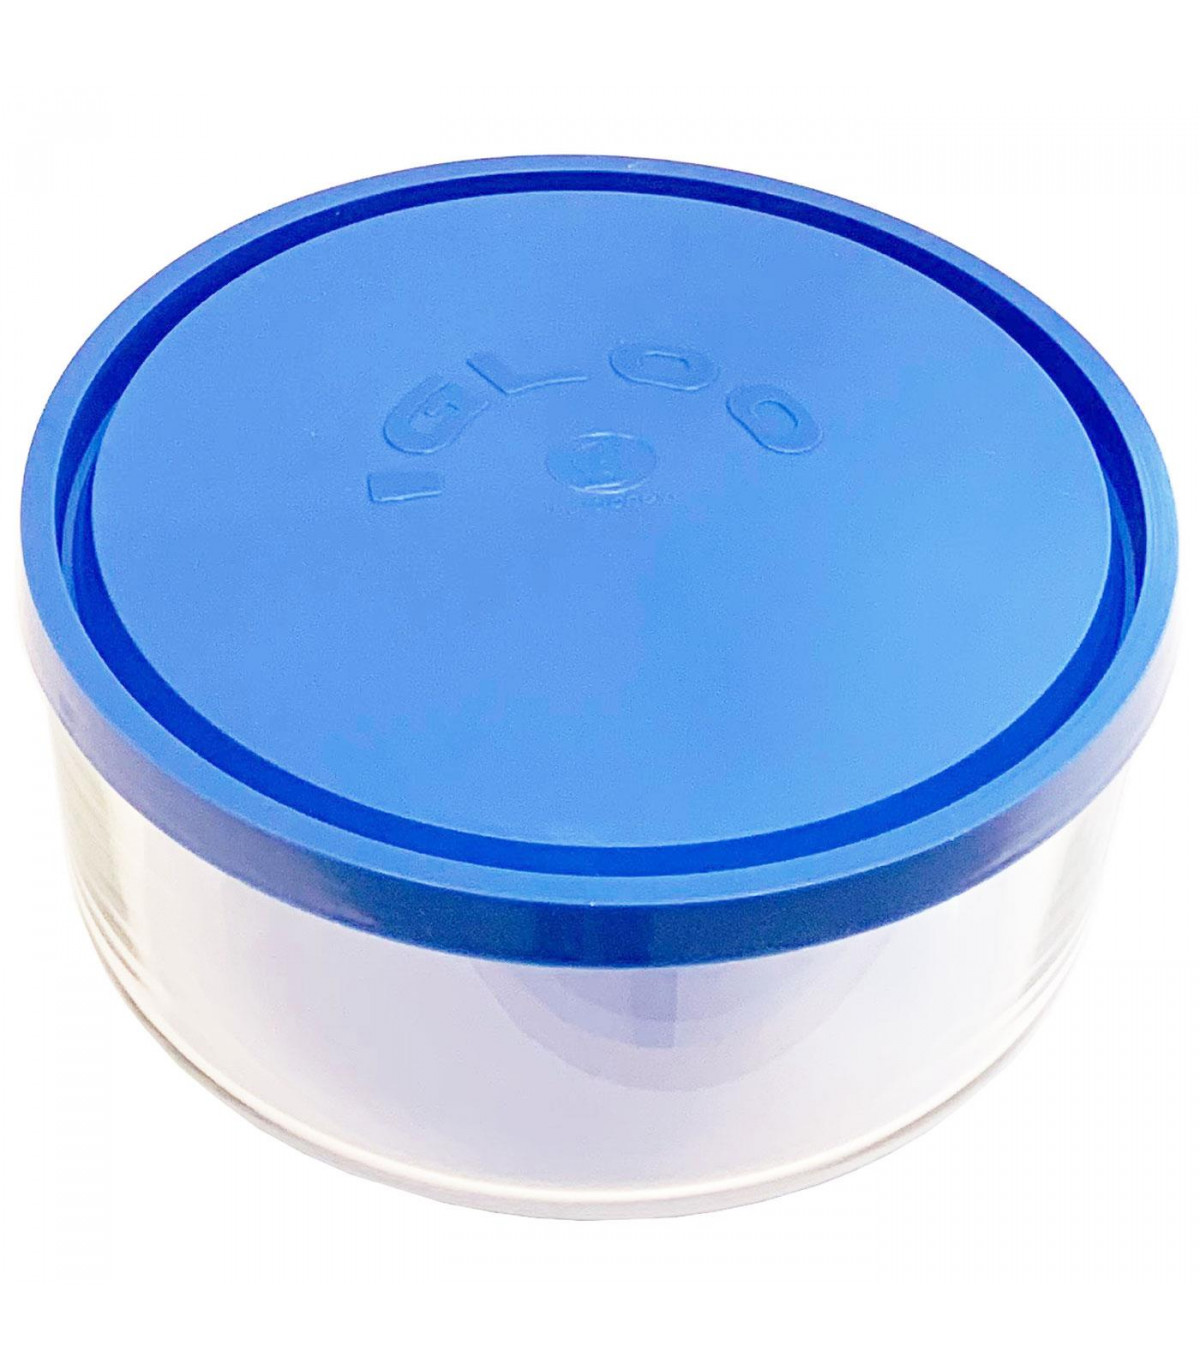 https://tradineur.com/47026-superlarge_default/fiambrera-redonda-cristal-tapa-de-plastico-18-cm-recipiente-de-vidrio-para-alimentos-apto-para-lavavajillas-microondas-y-congela.jpg